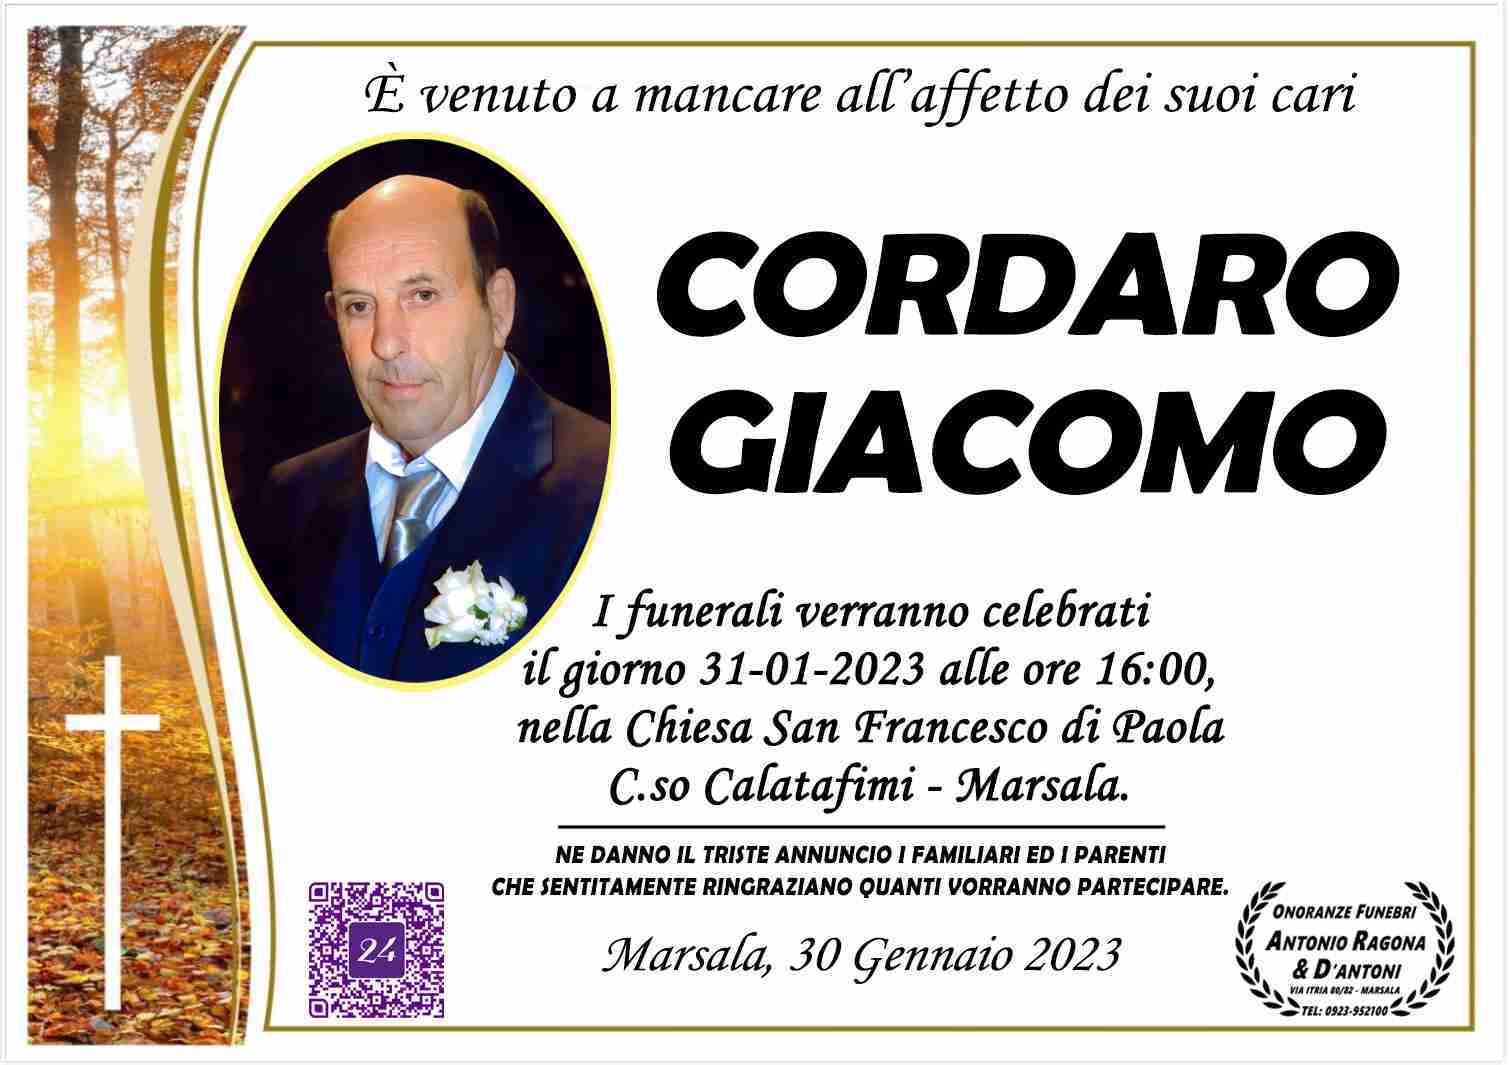 Giacomo Cordaro